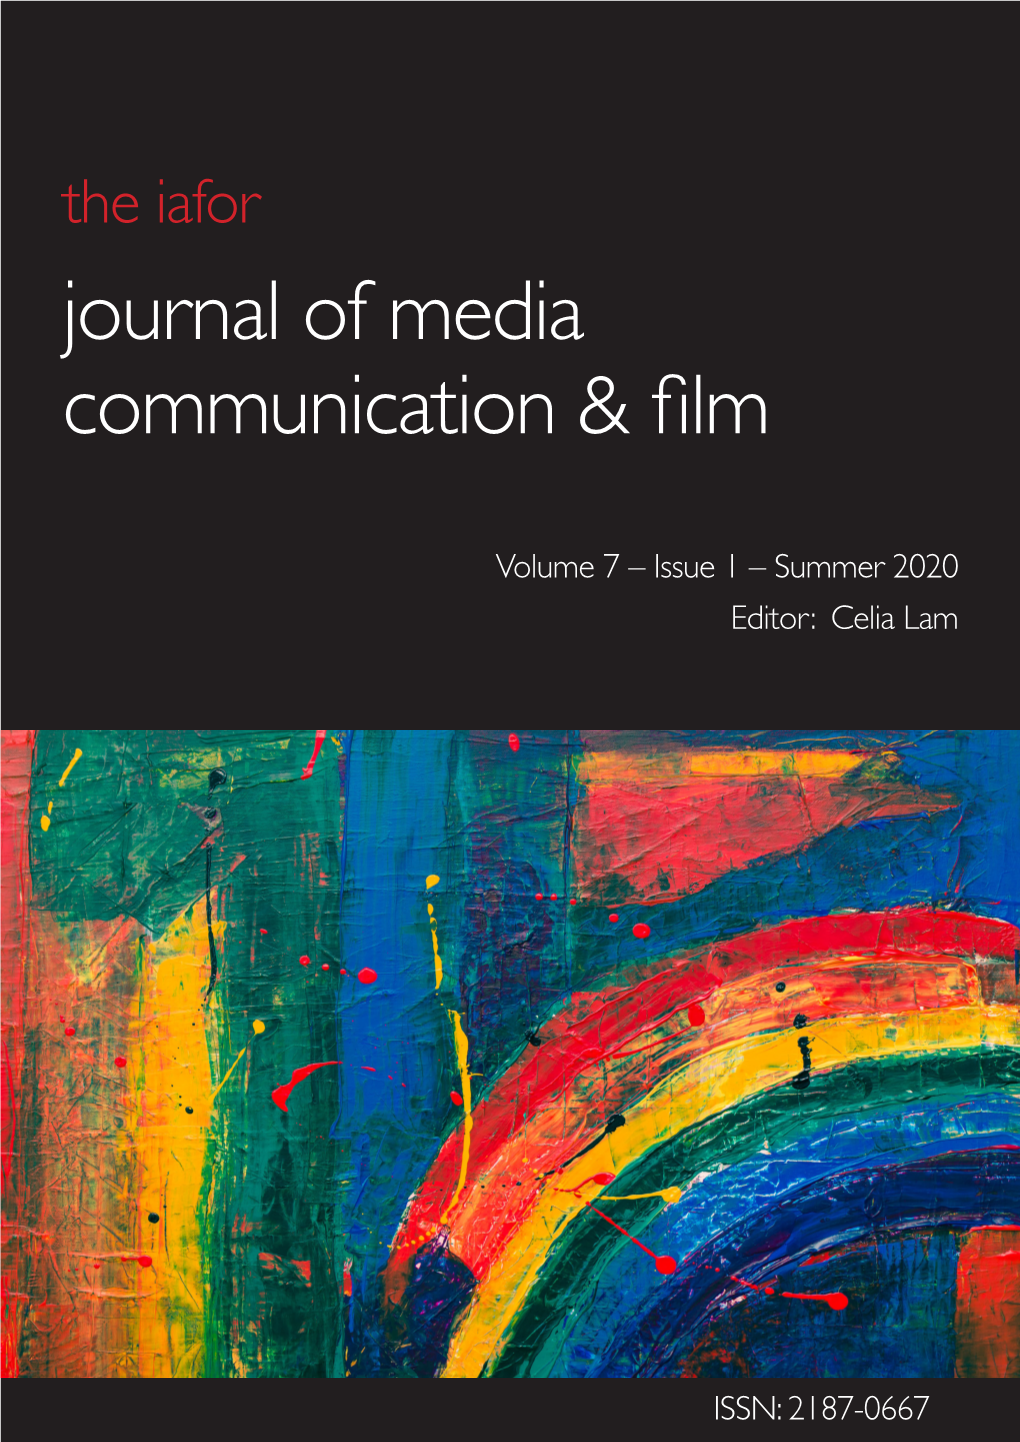 The Iafor Journal of Media Communication & Film